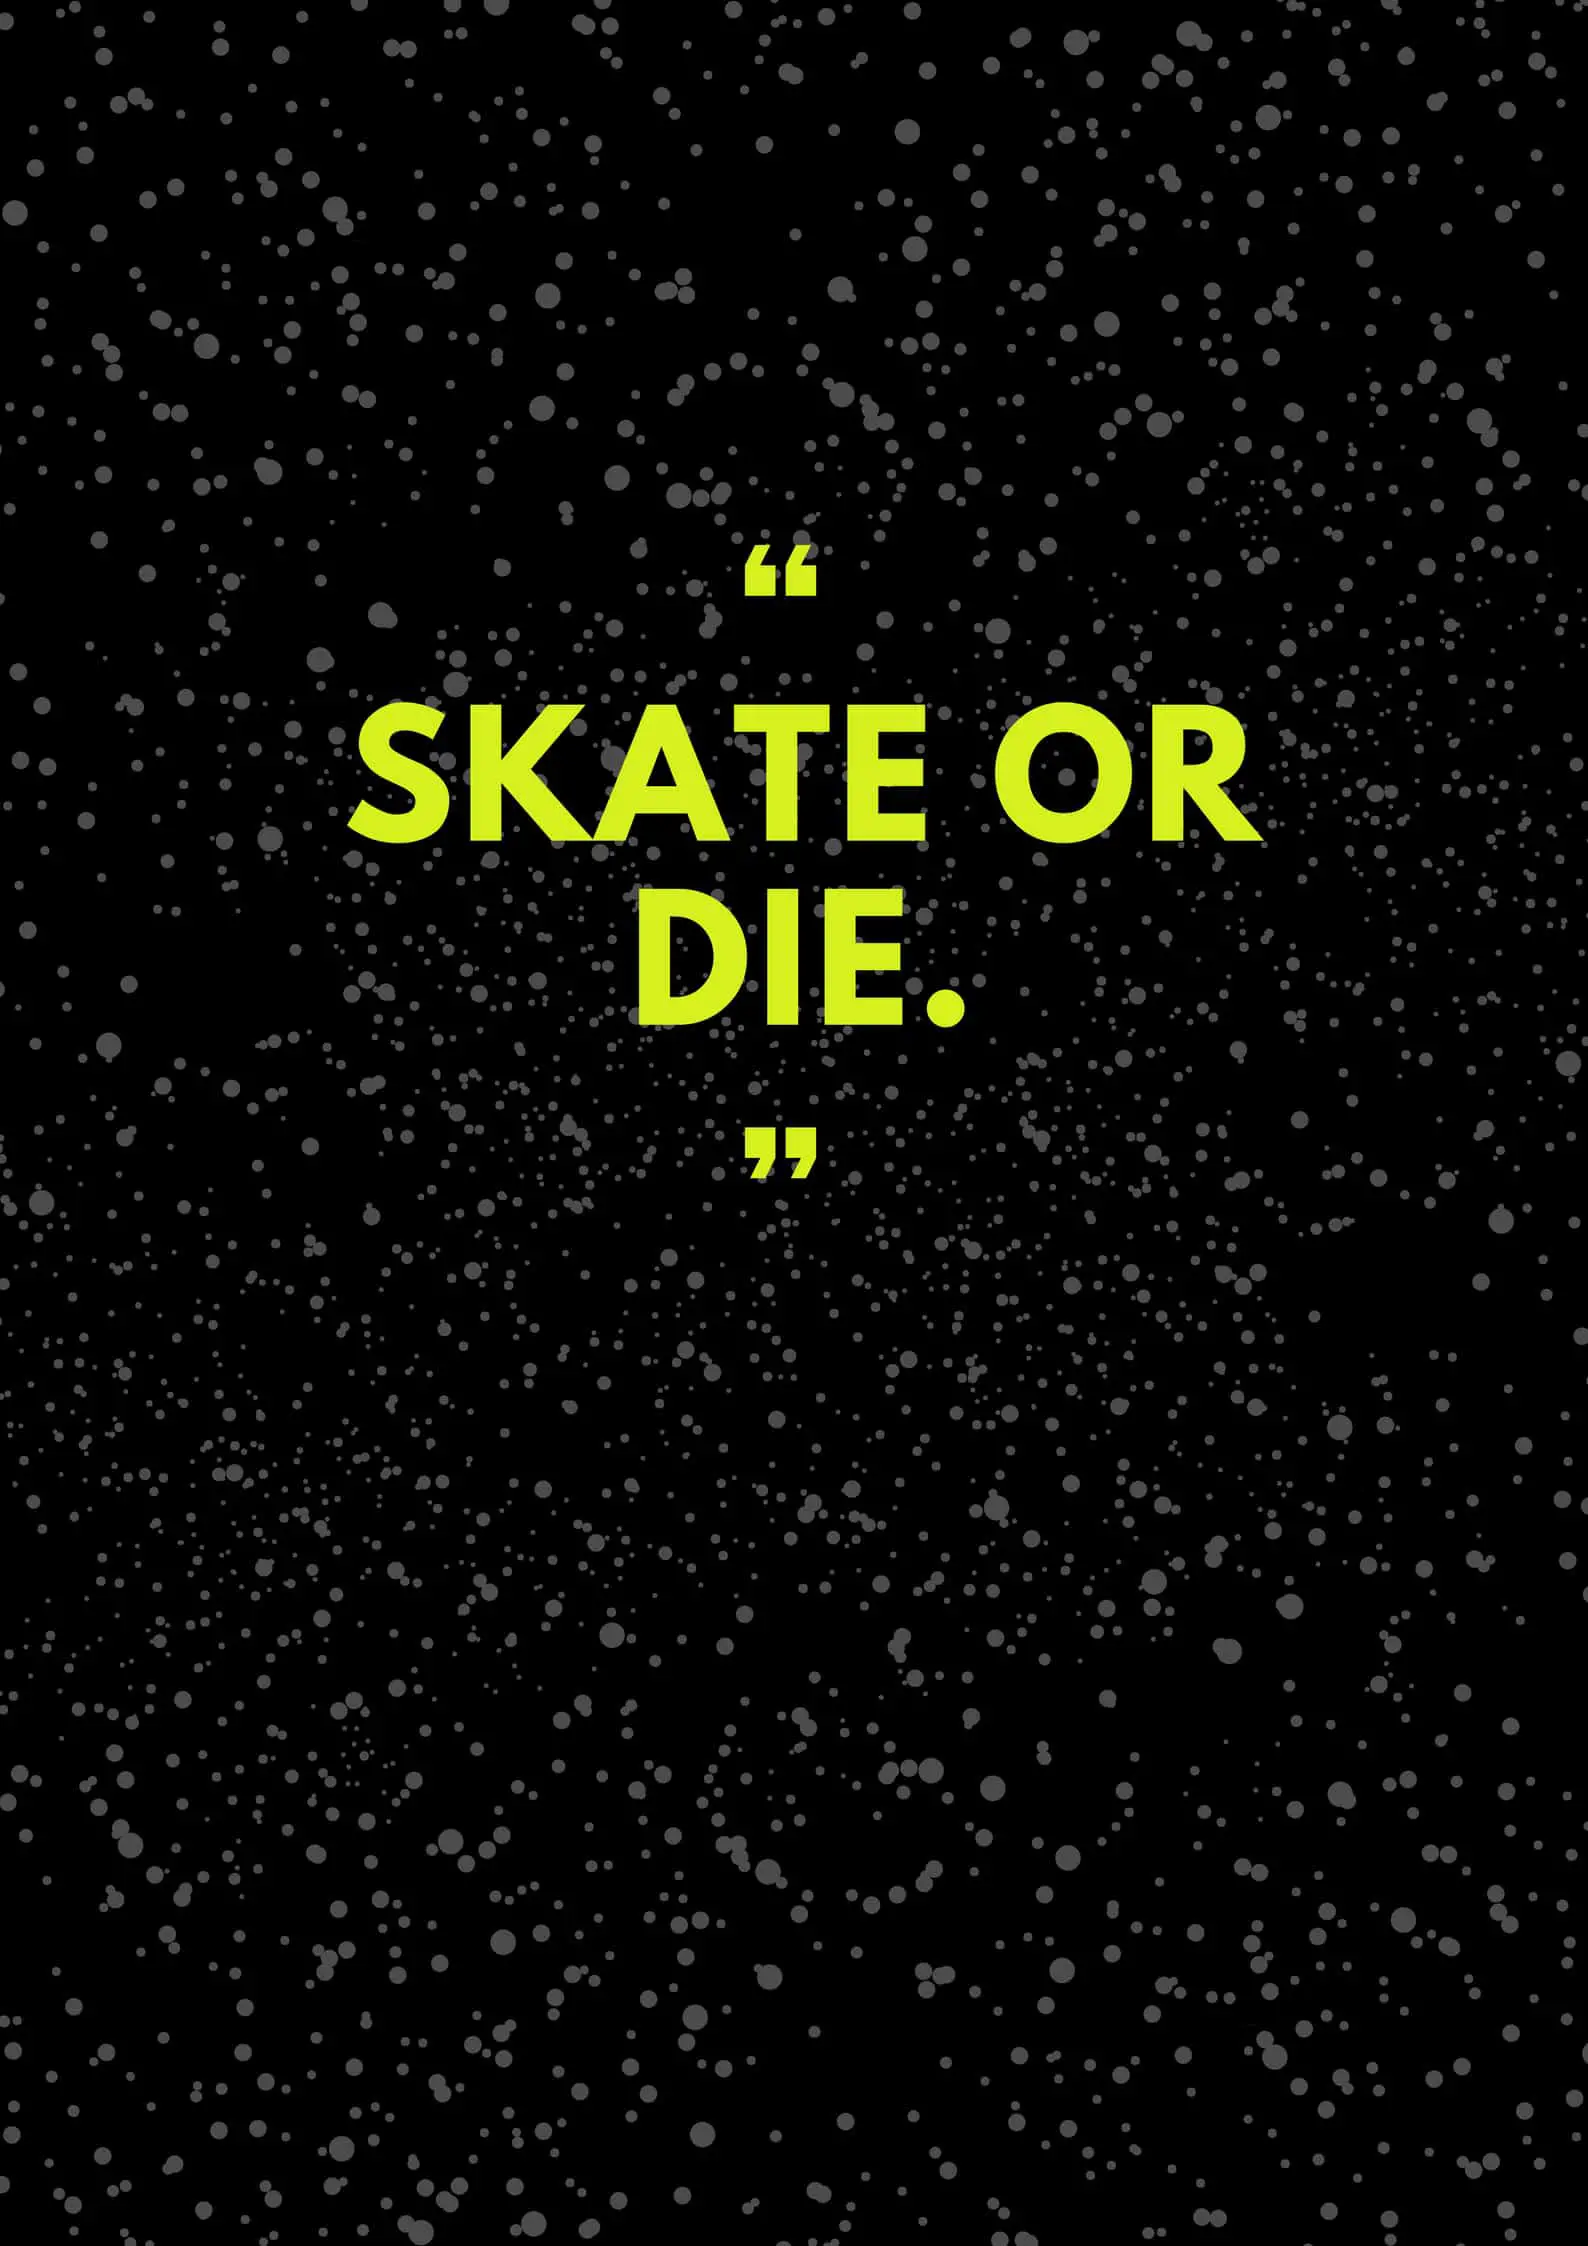 Skate or die.